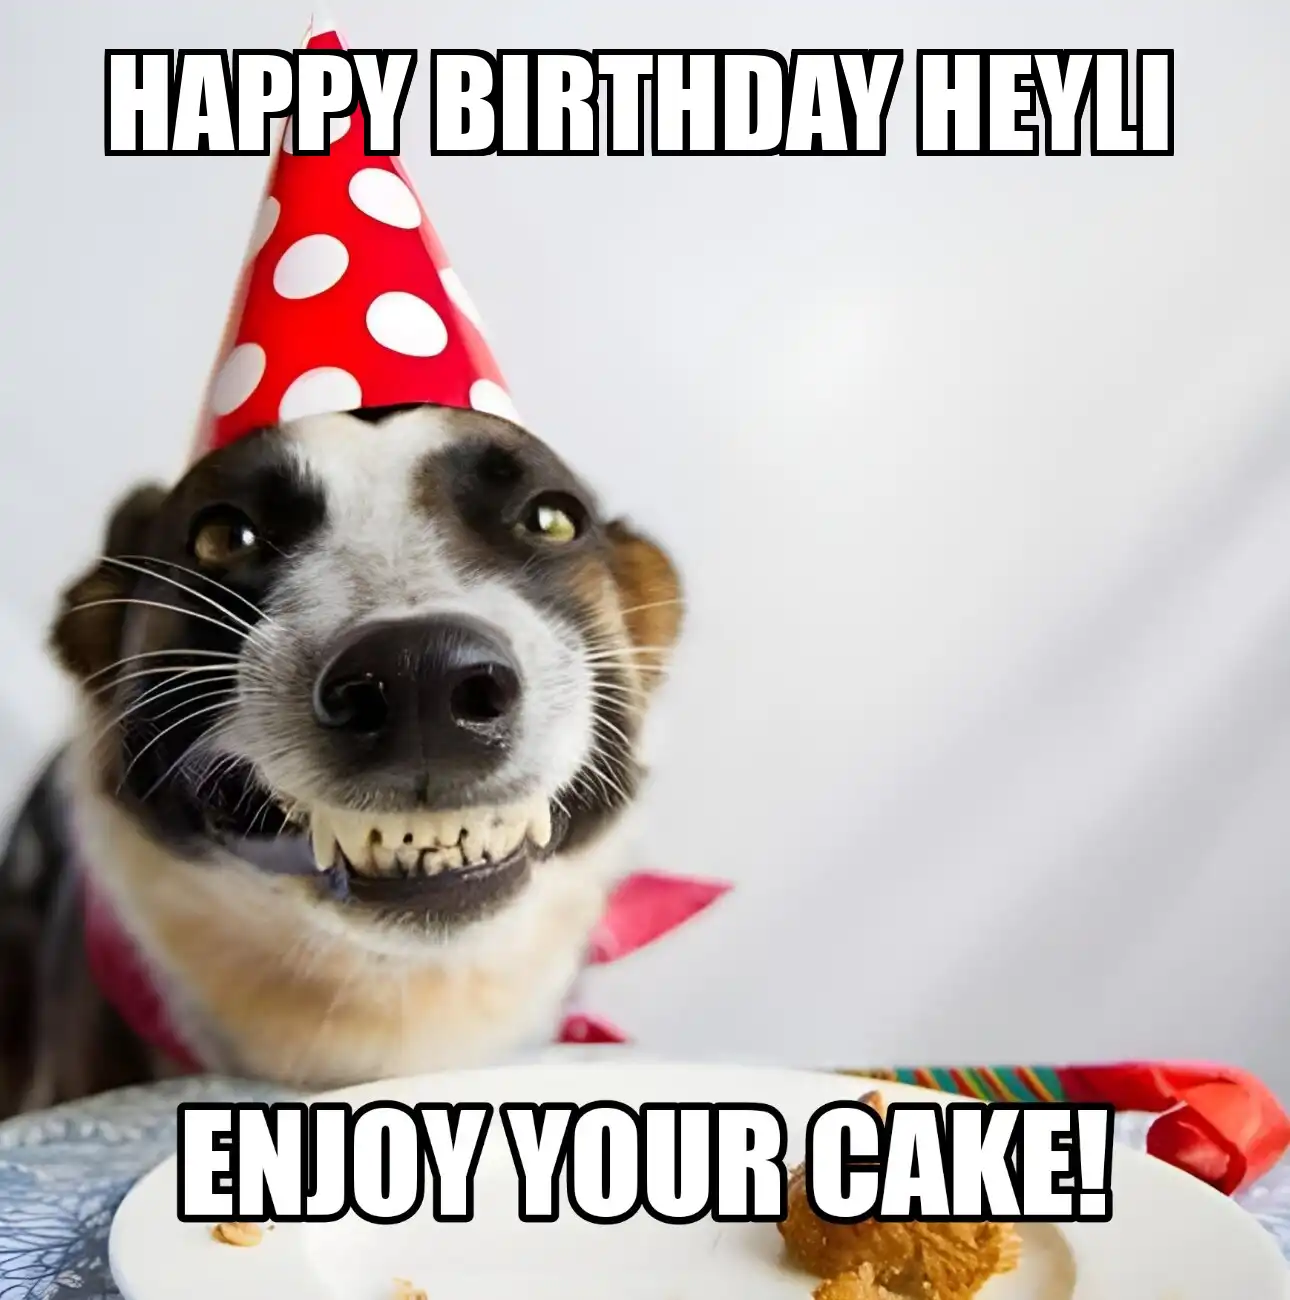 Happy Birthday Heyli Enjoy Your Cake Dog Meme